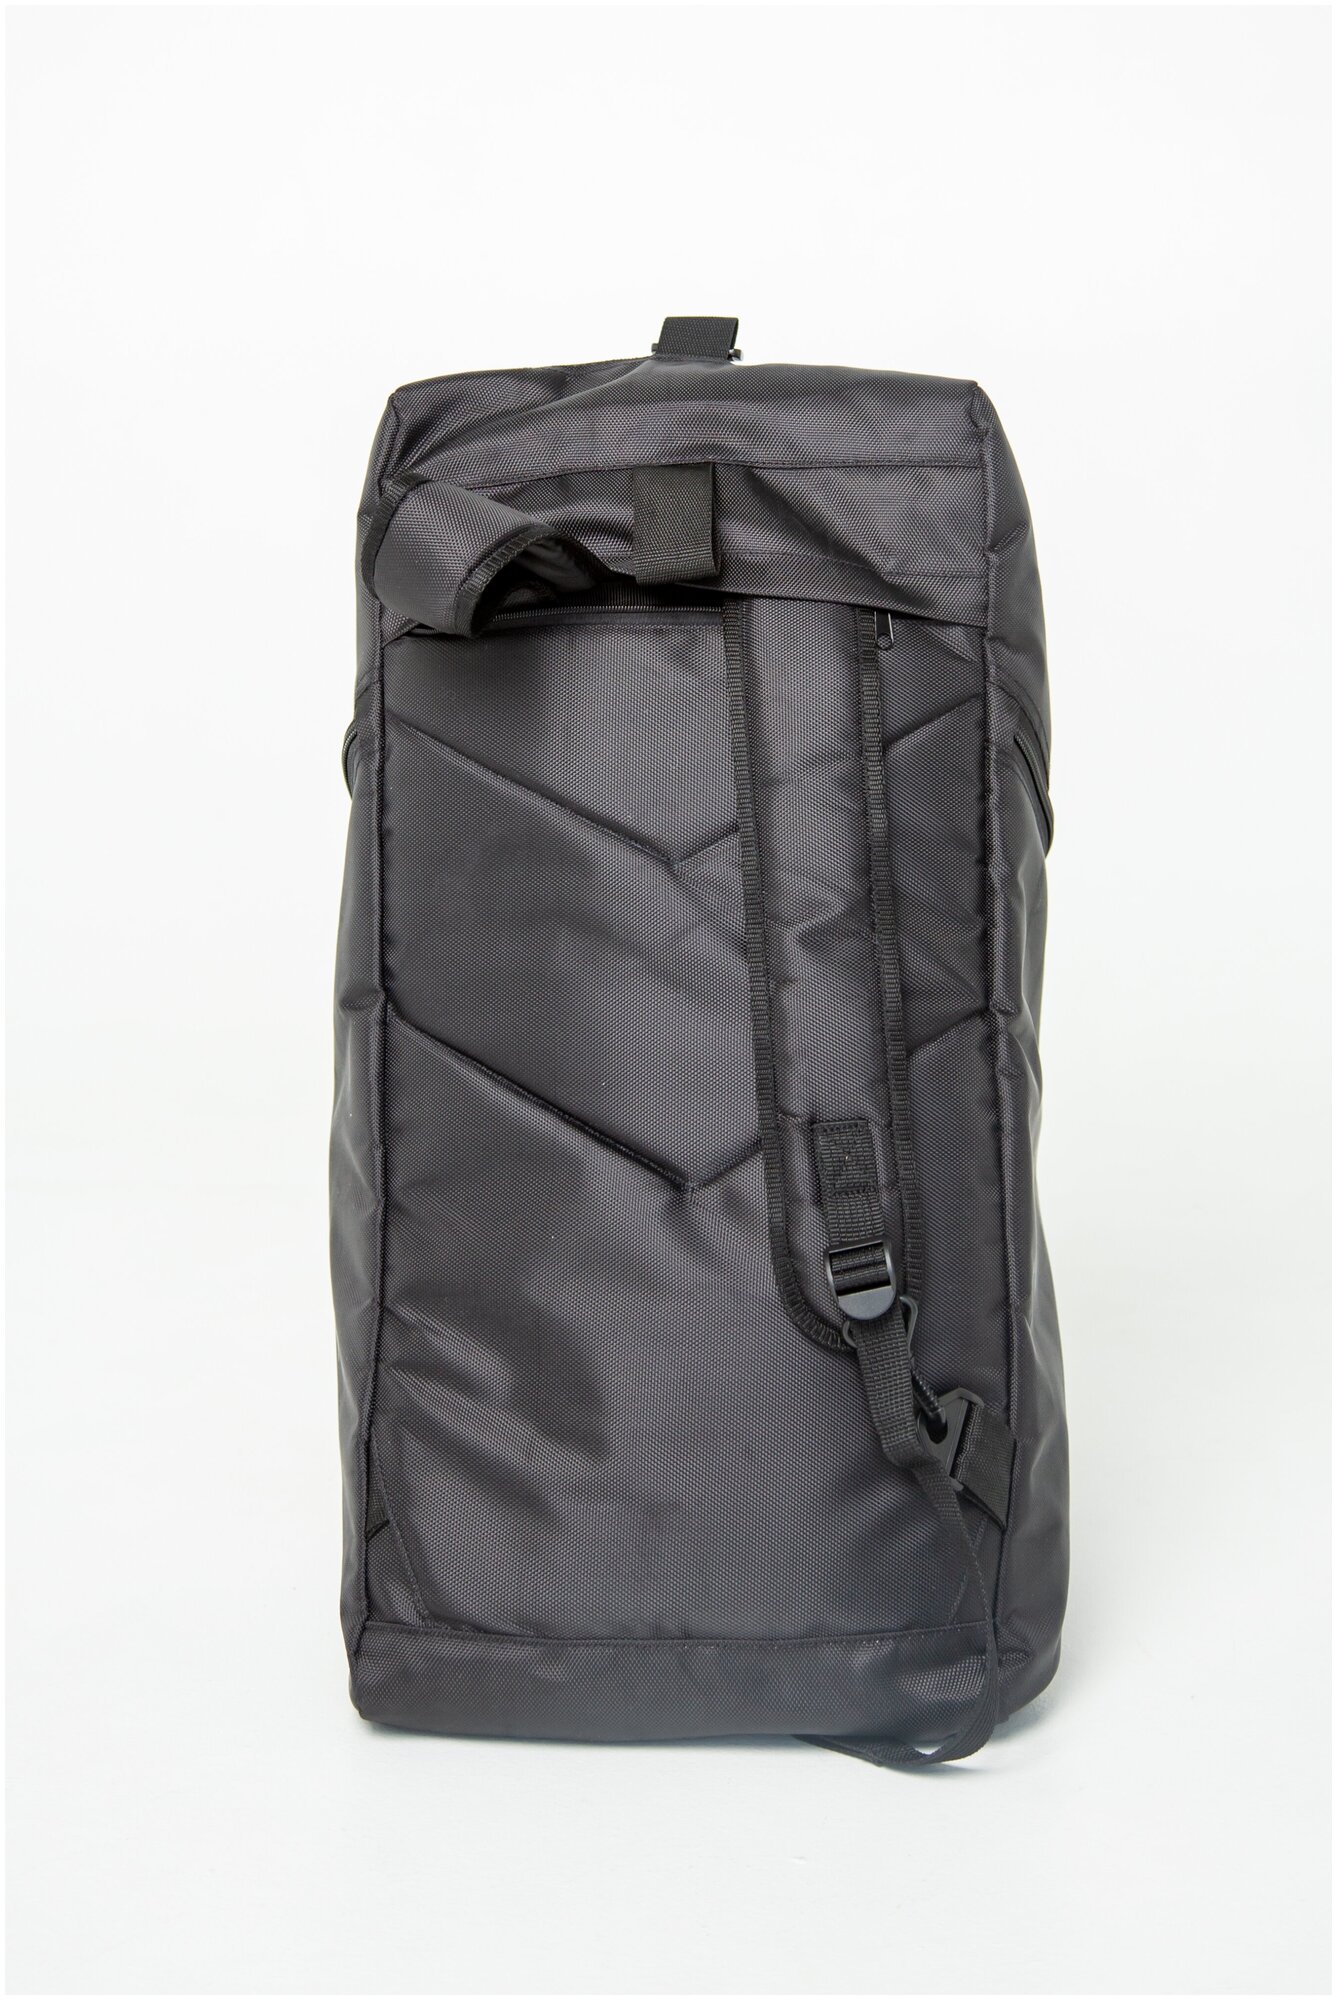 Городская спортивная сумка рюкзак черный цвет размер 65х32х32 см - фотография № 4